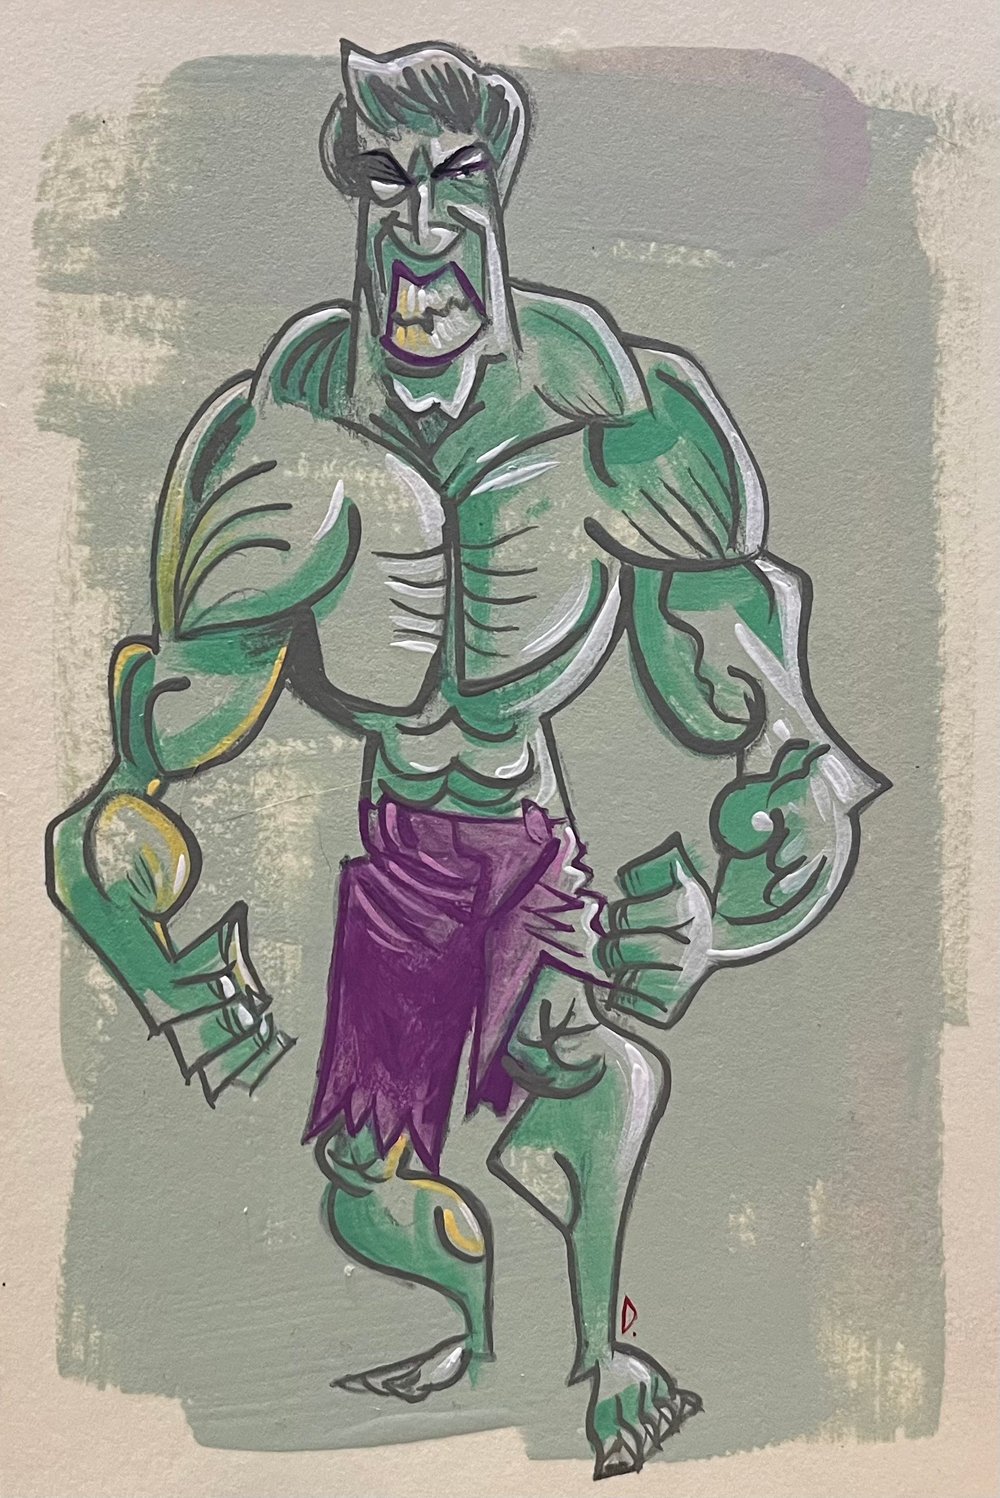 Lou - Incredible Hulk